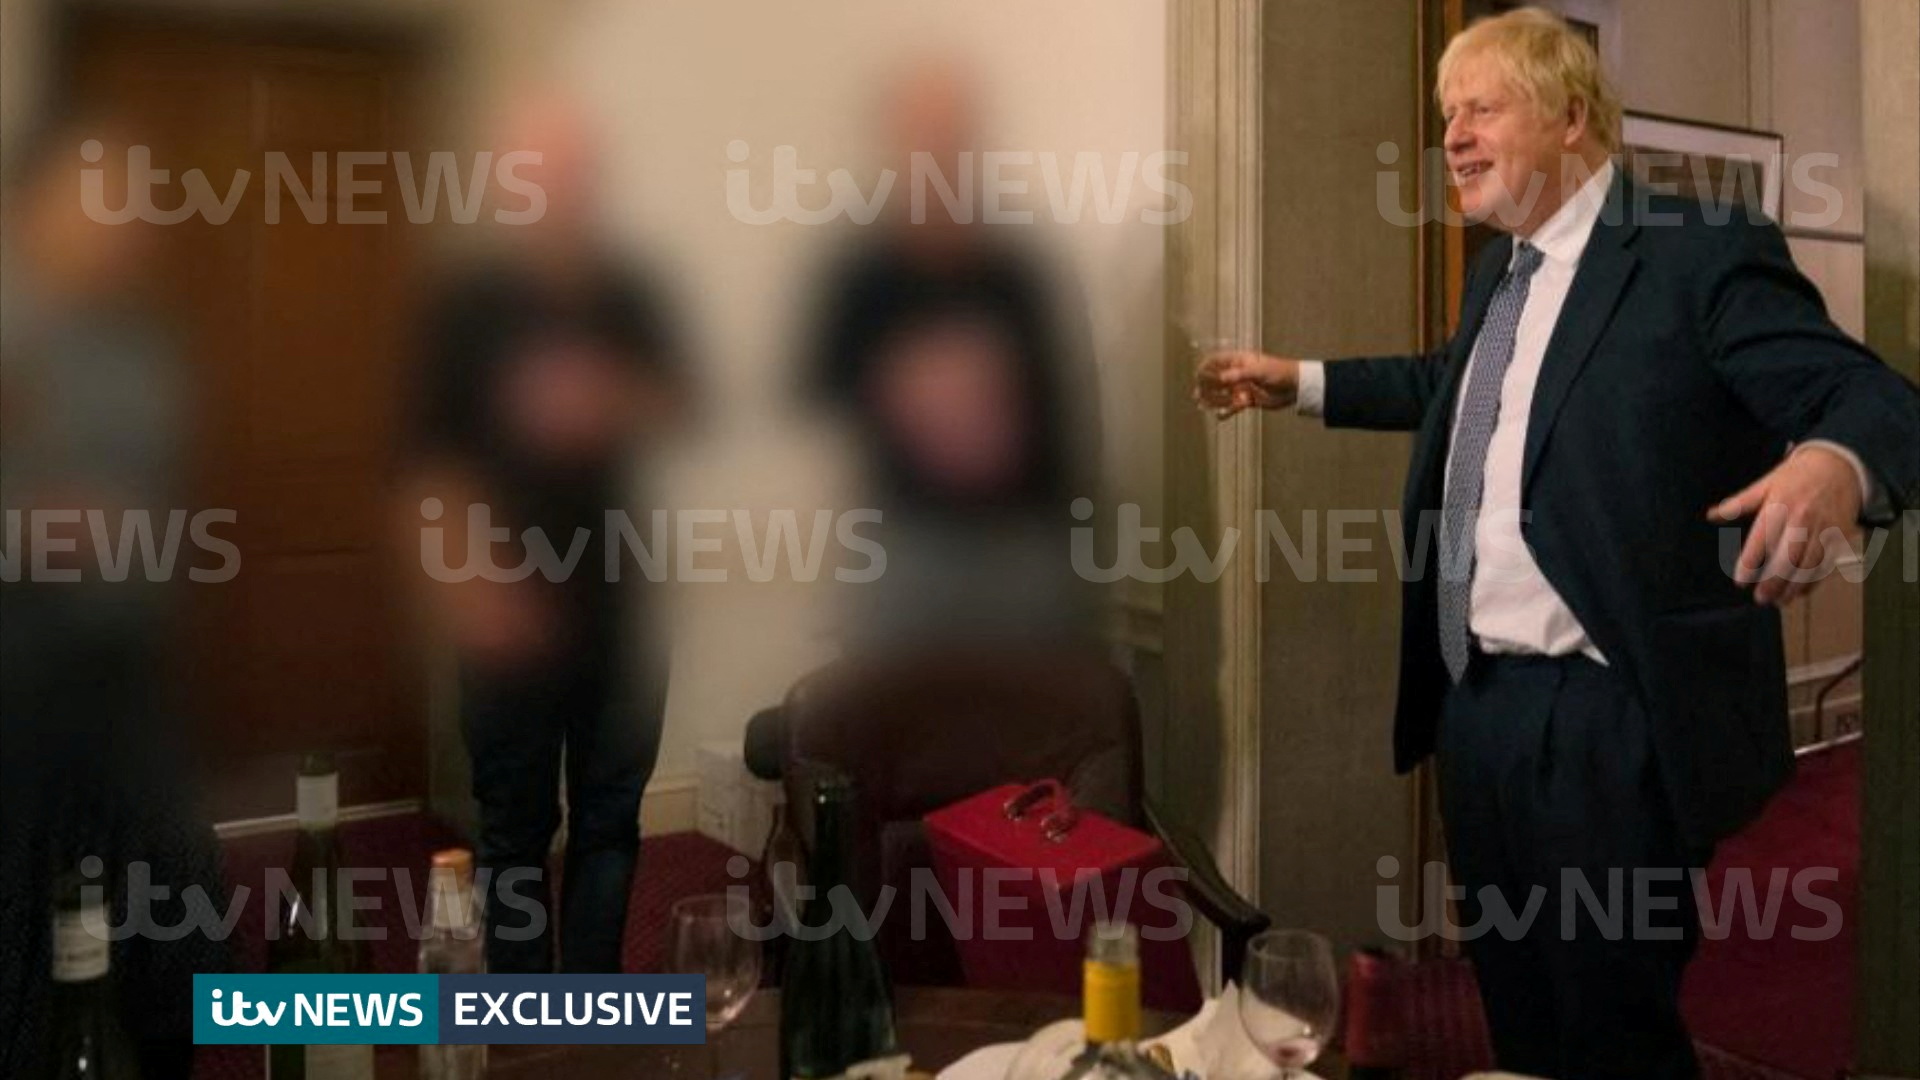 El llamado “Partygate” es el escándalo sobre más de una docena de reuniones en la residencia de Johnson en el número 10 de Downing St. y edificios cercanos (ITV News/REUTERS)